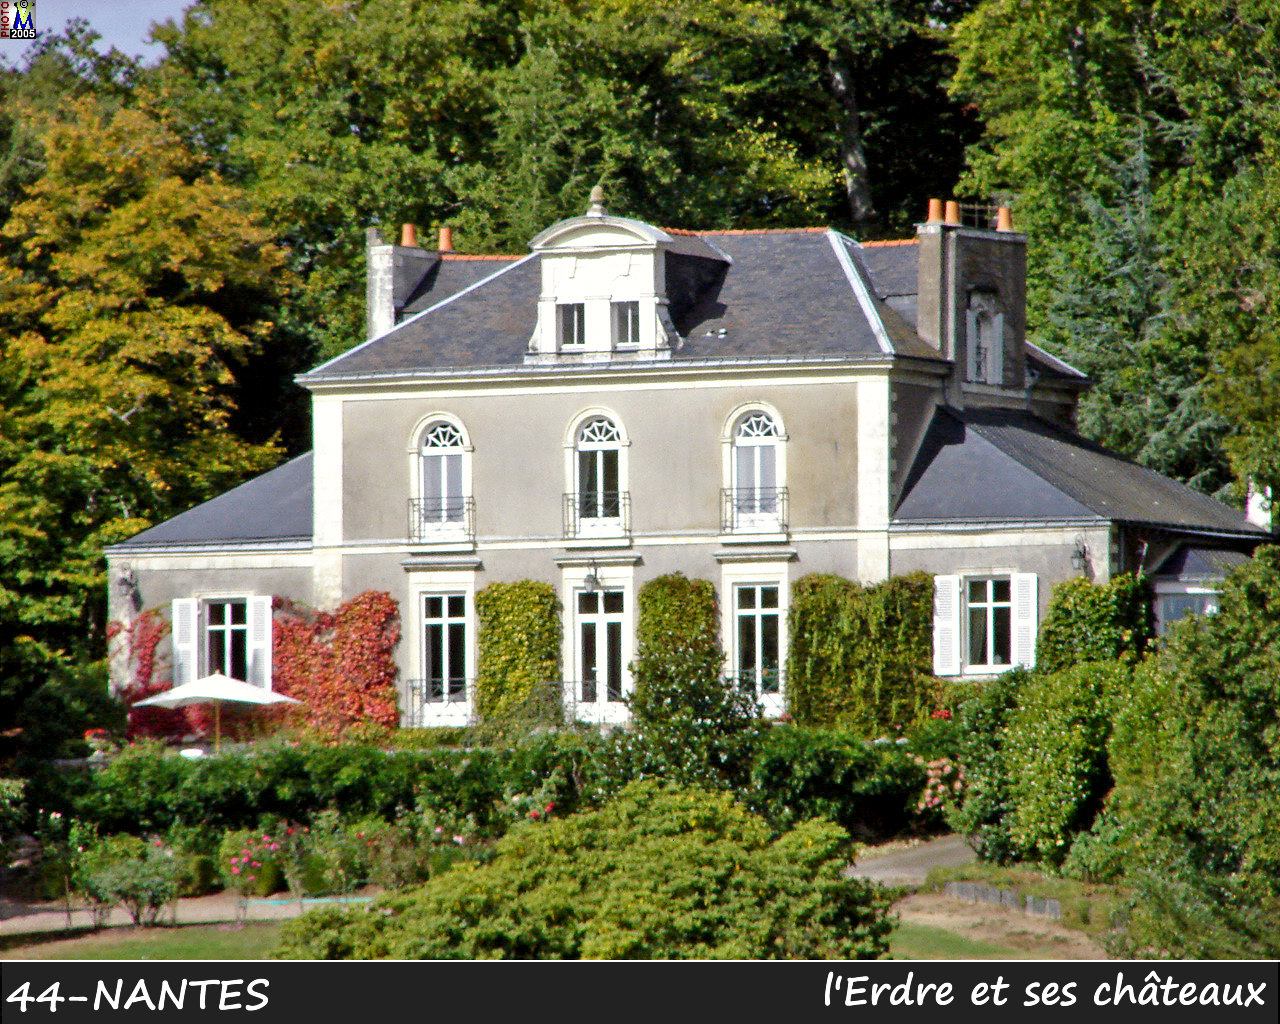 44NANTES_erdre-chateau_120.jpg